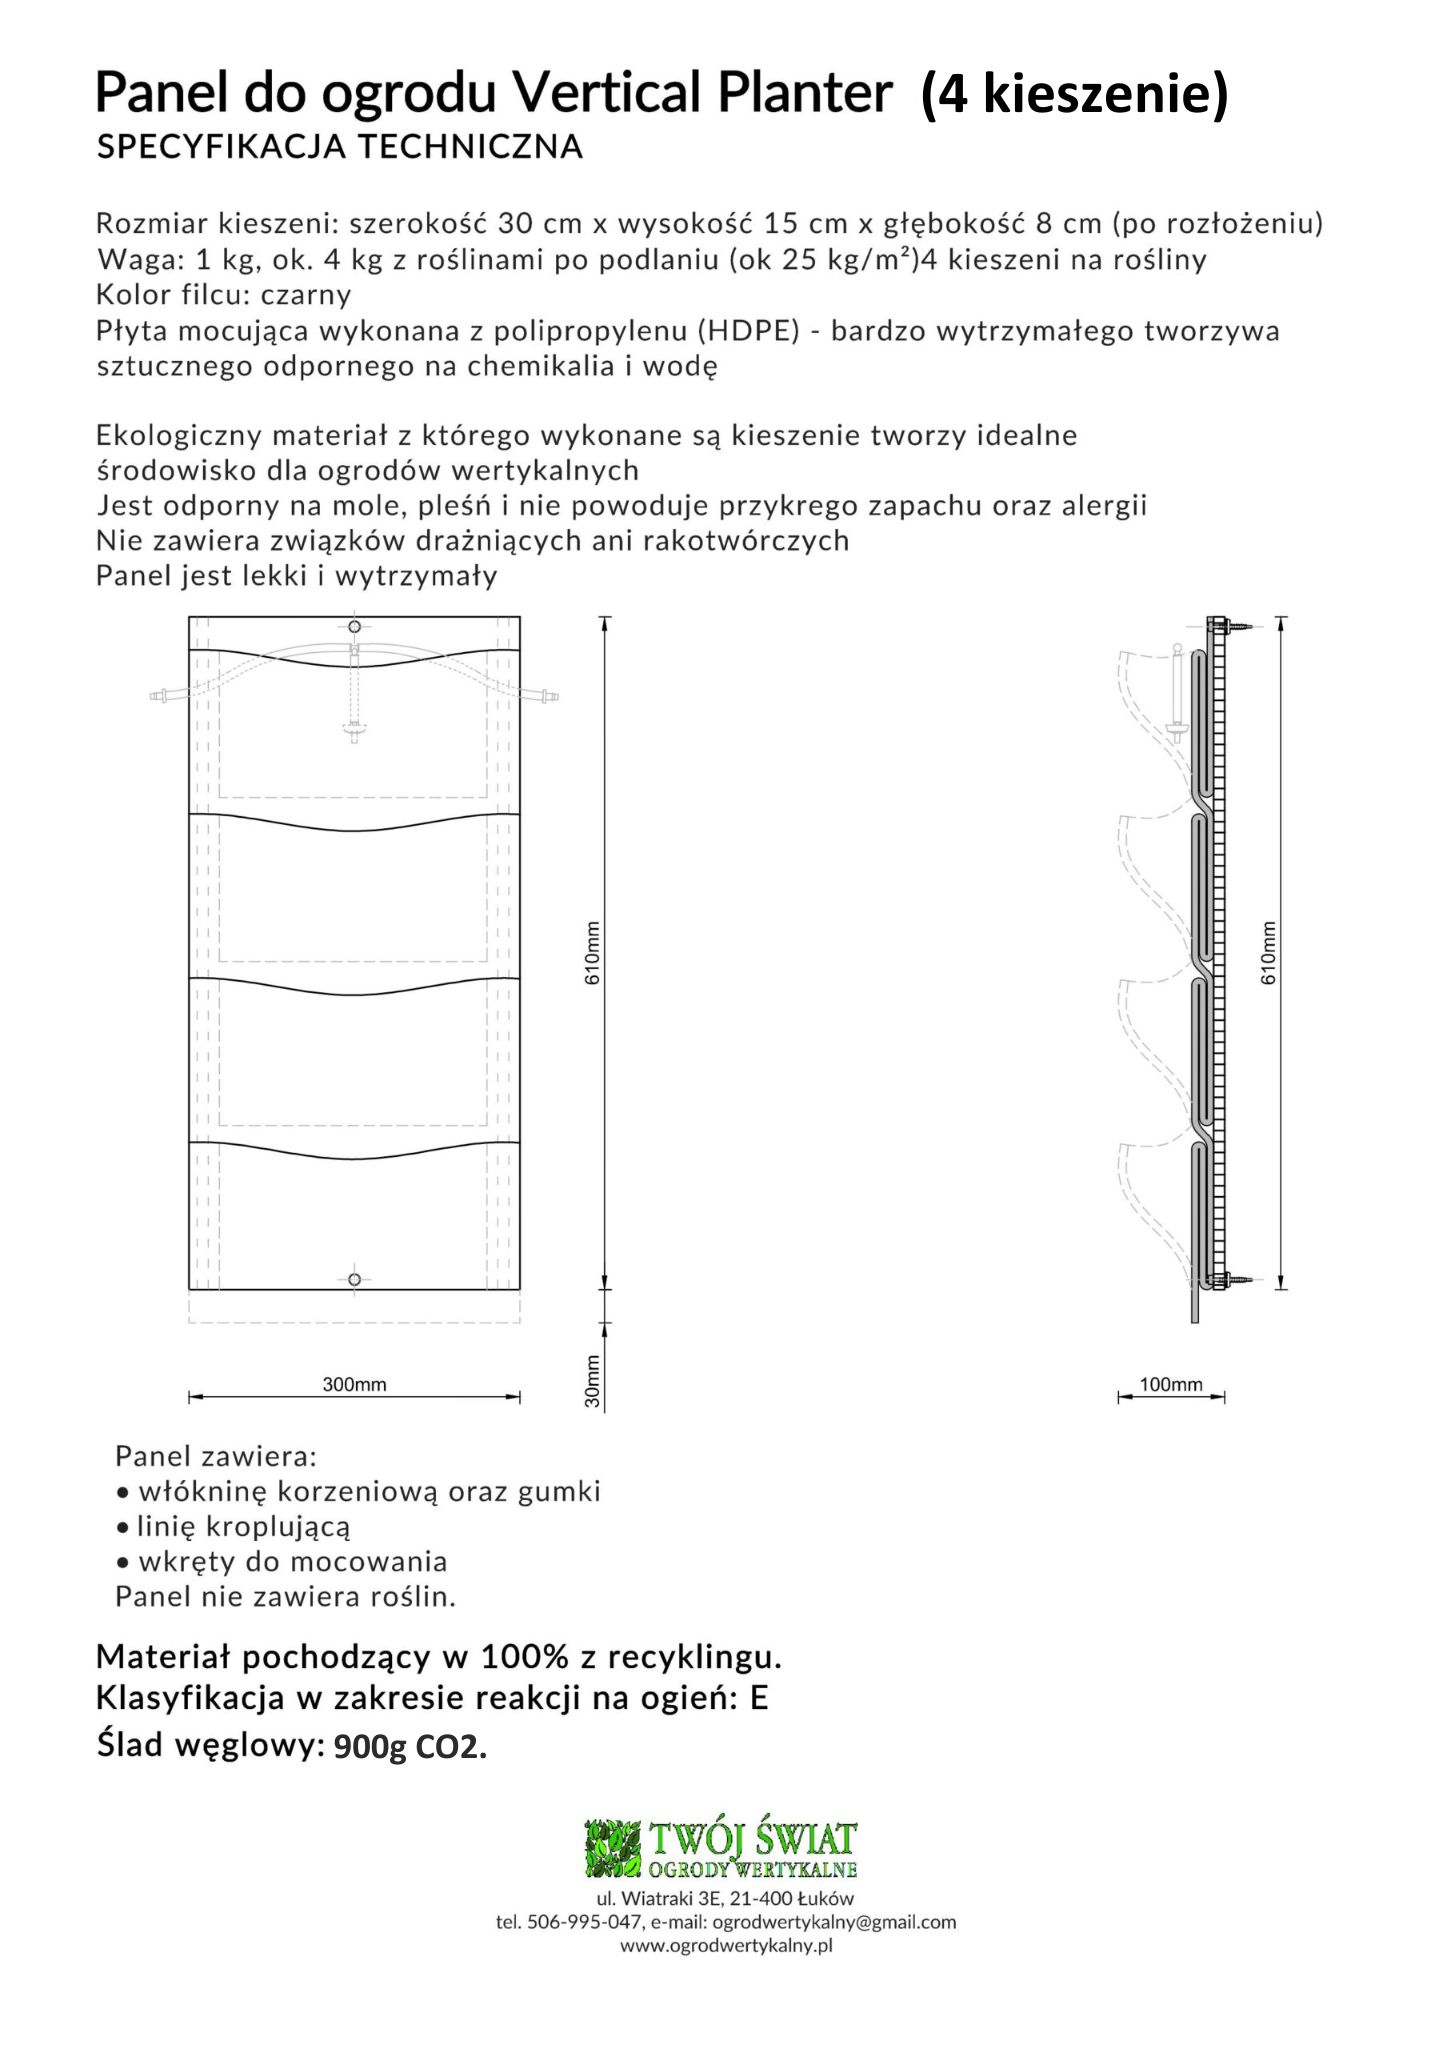 4 kieszeniowy panel PlantaUp - specyfikacja techniczna